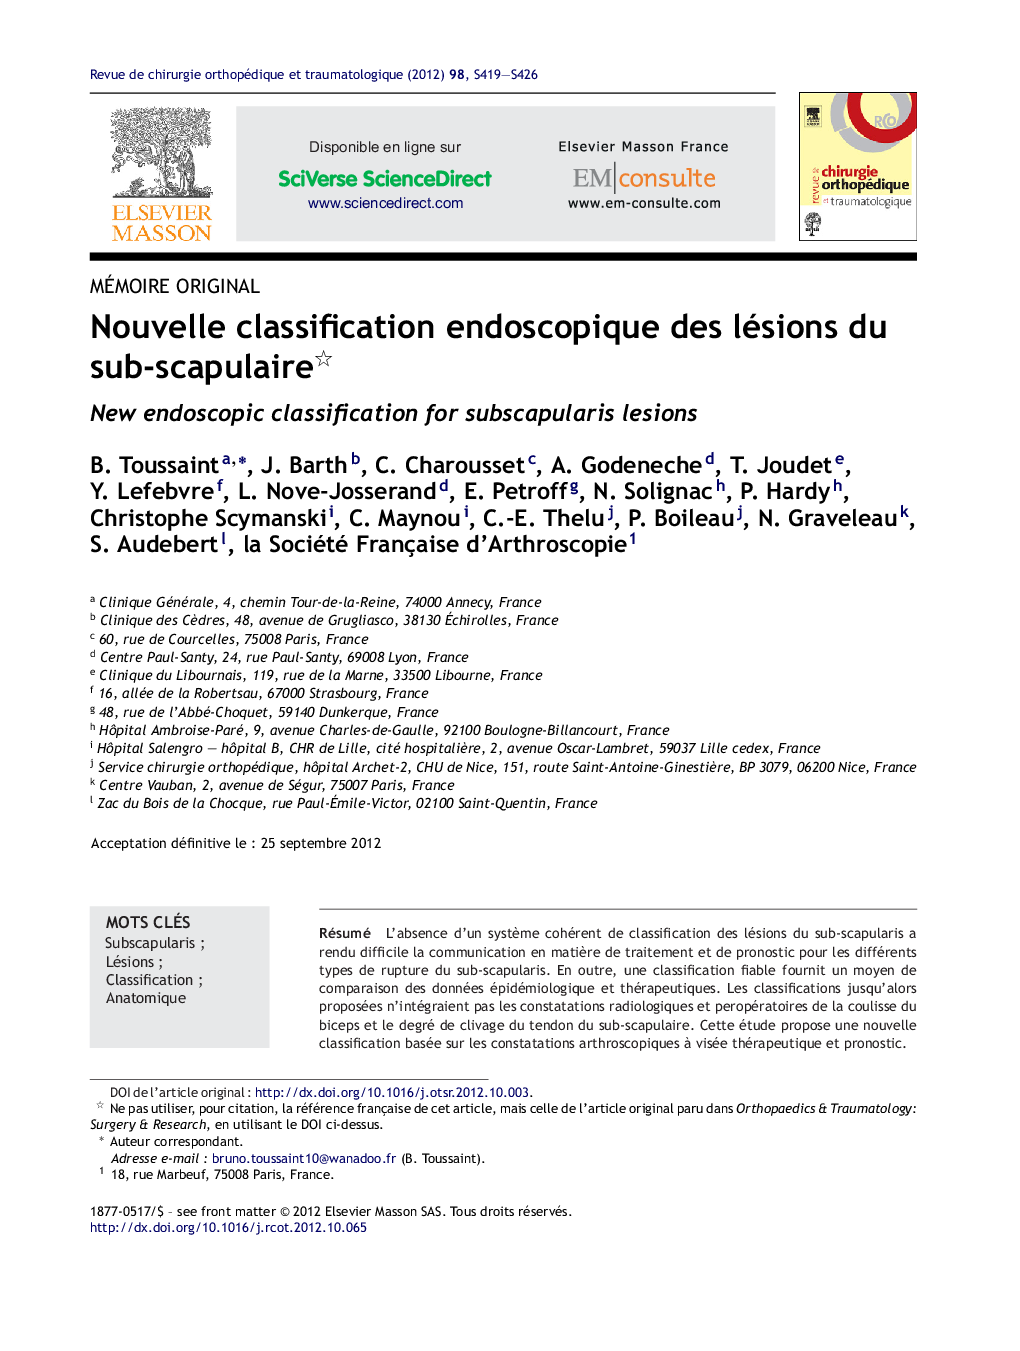 Nouvelle classification endoscopique des lésions du sub-scapulaire 